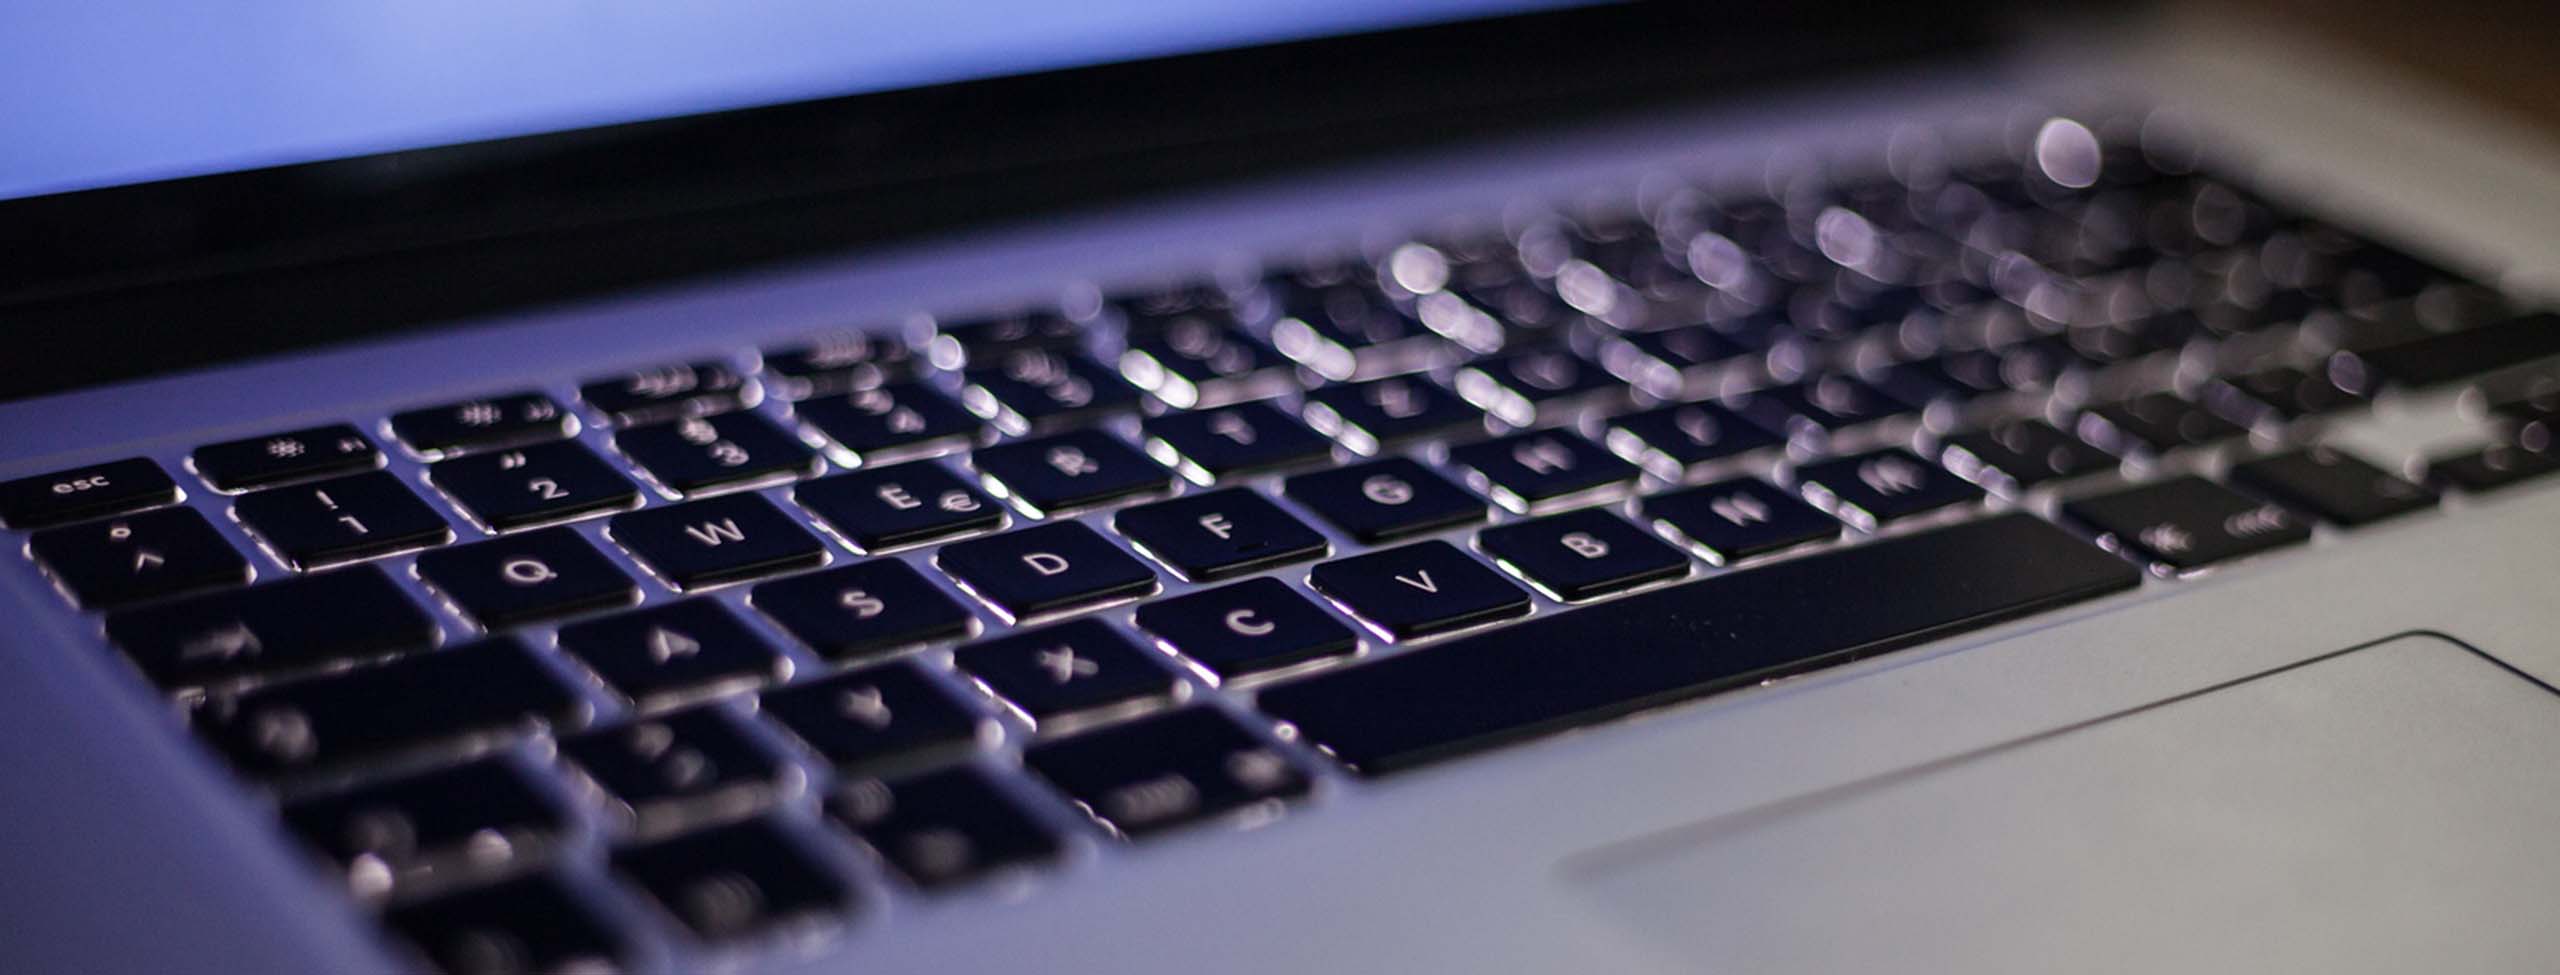 laptop keyboard detail